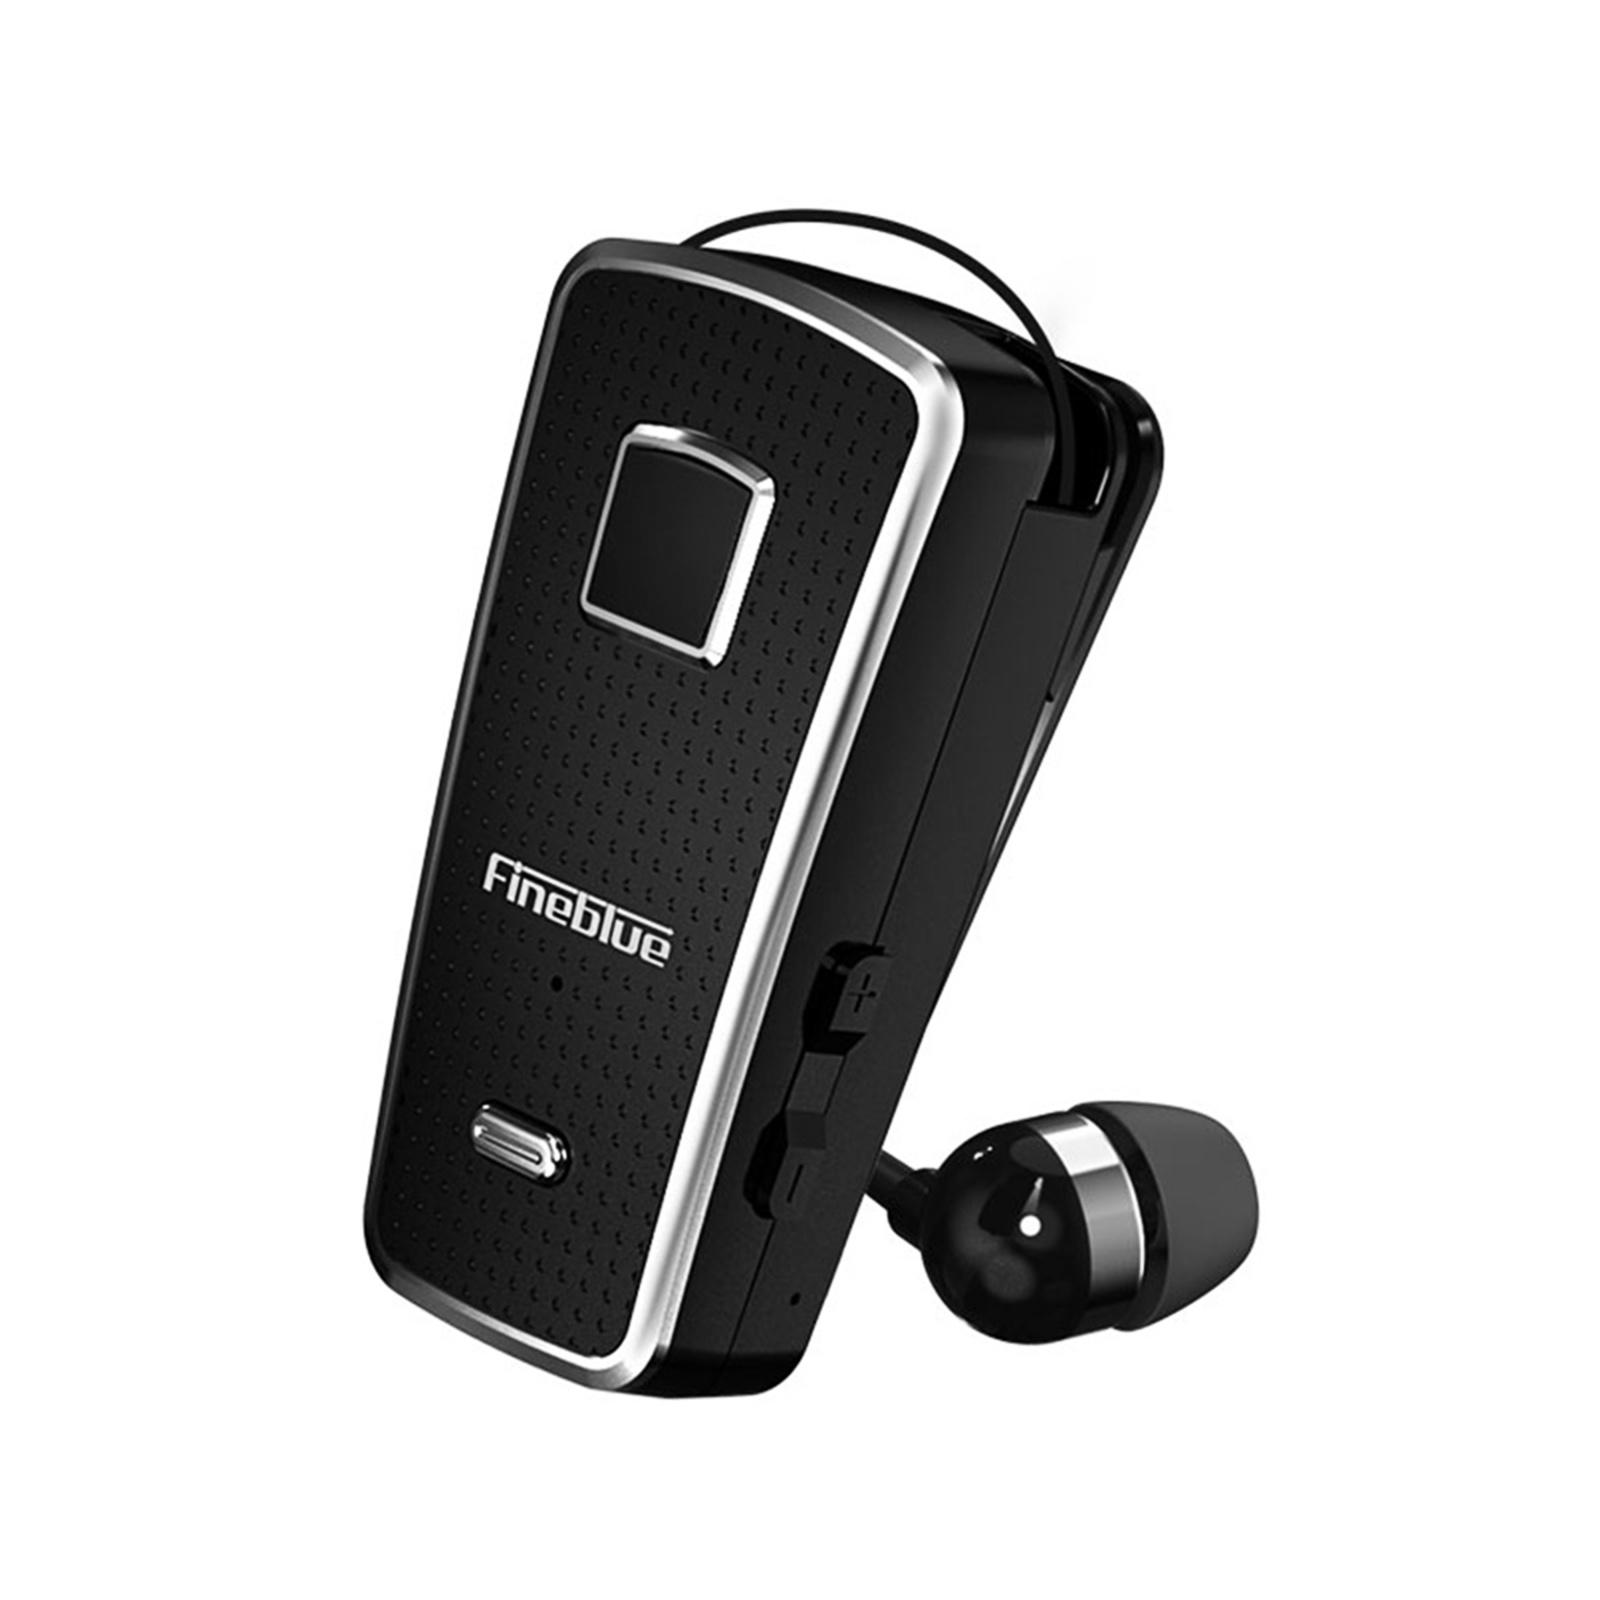 Tai nghe Fineblue F970 Pro Kẹp trên tai,không dây Bluetooth 5.0